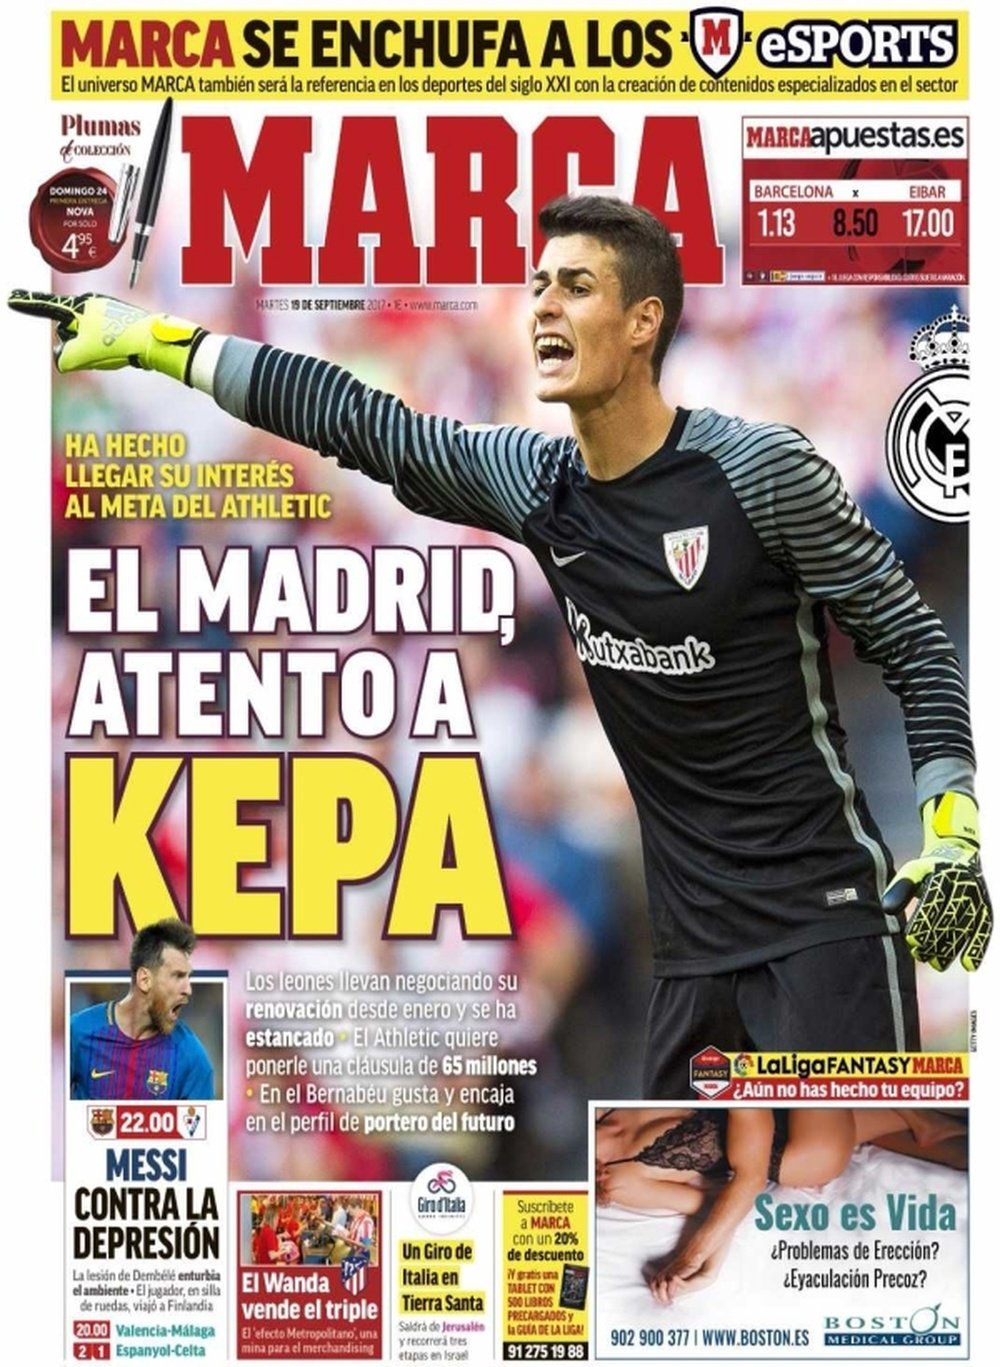 La Une du quotidien sportif 'Marca' du 19-09-17. Marca